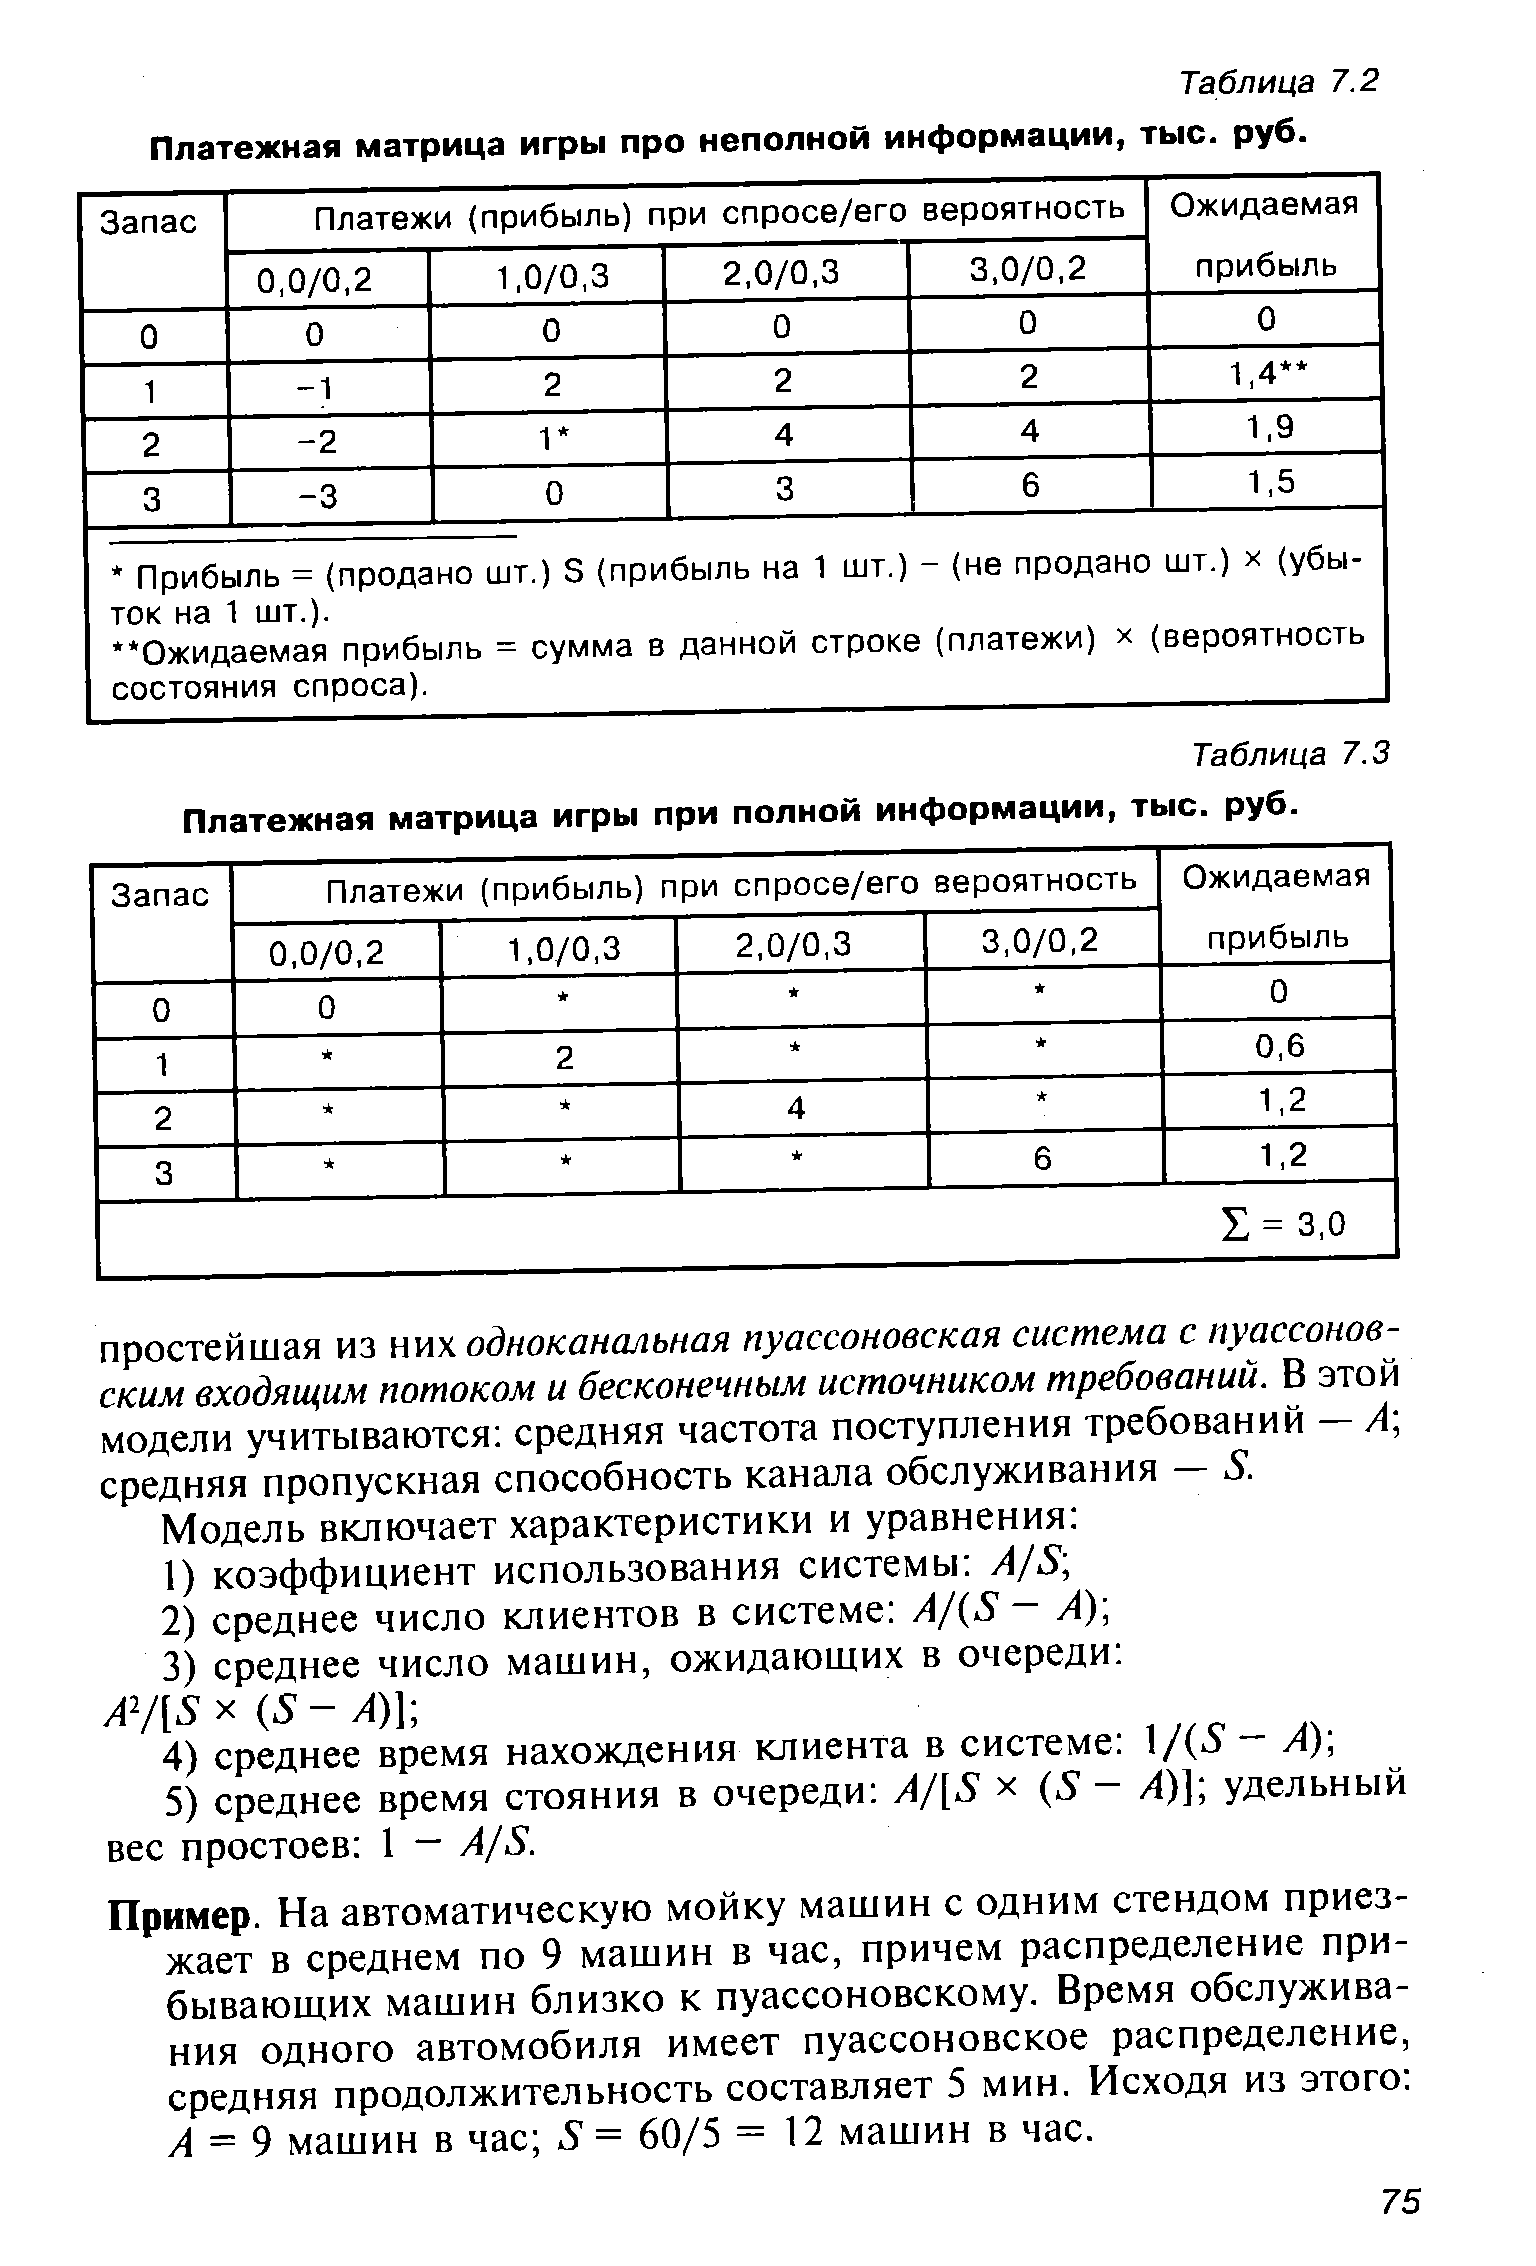 Таблица 7.2 Платежная матрица игры про неполной информации, тыс. руб.
